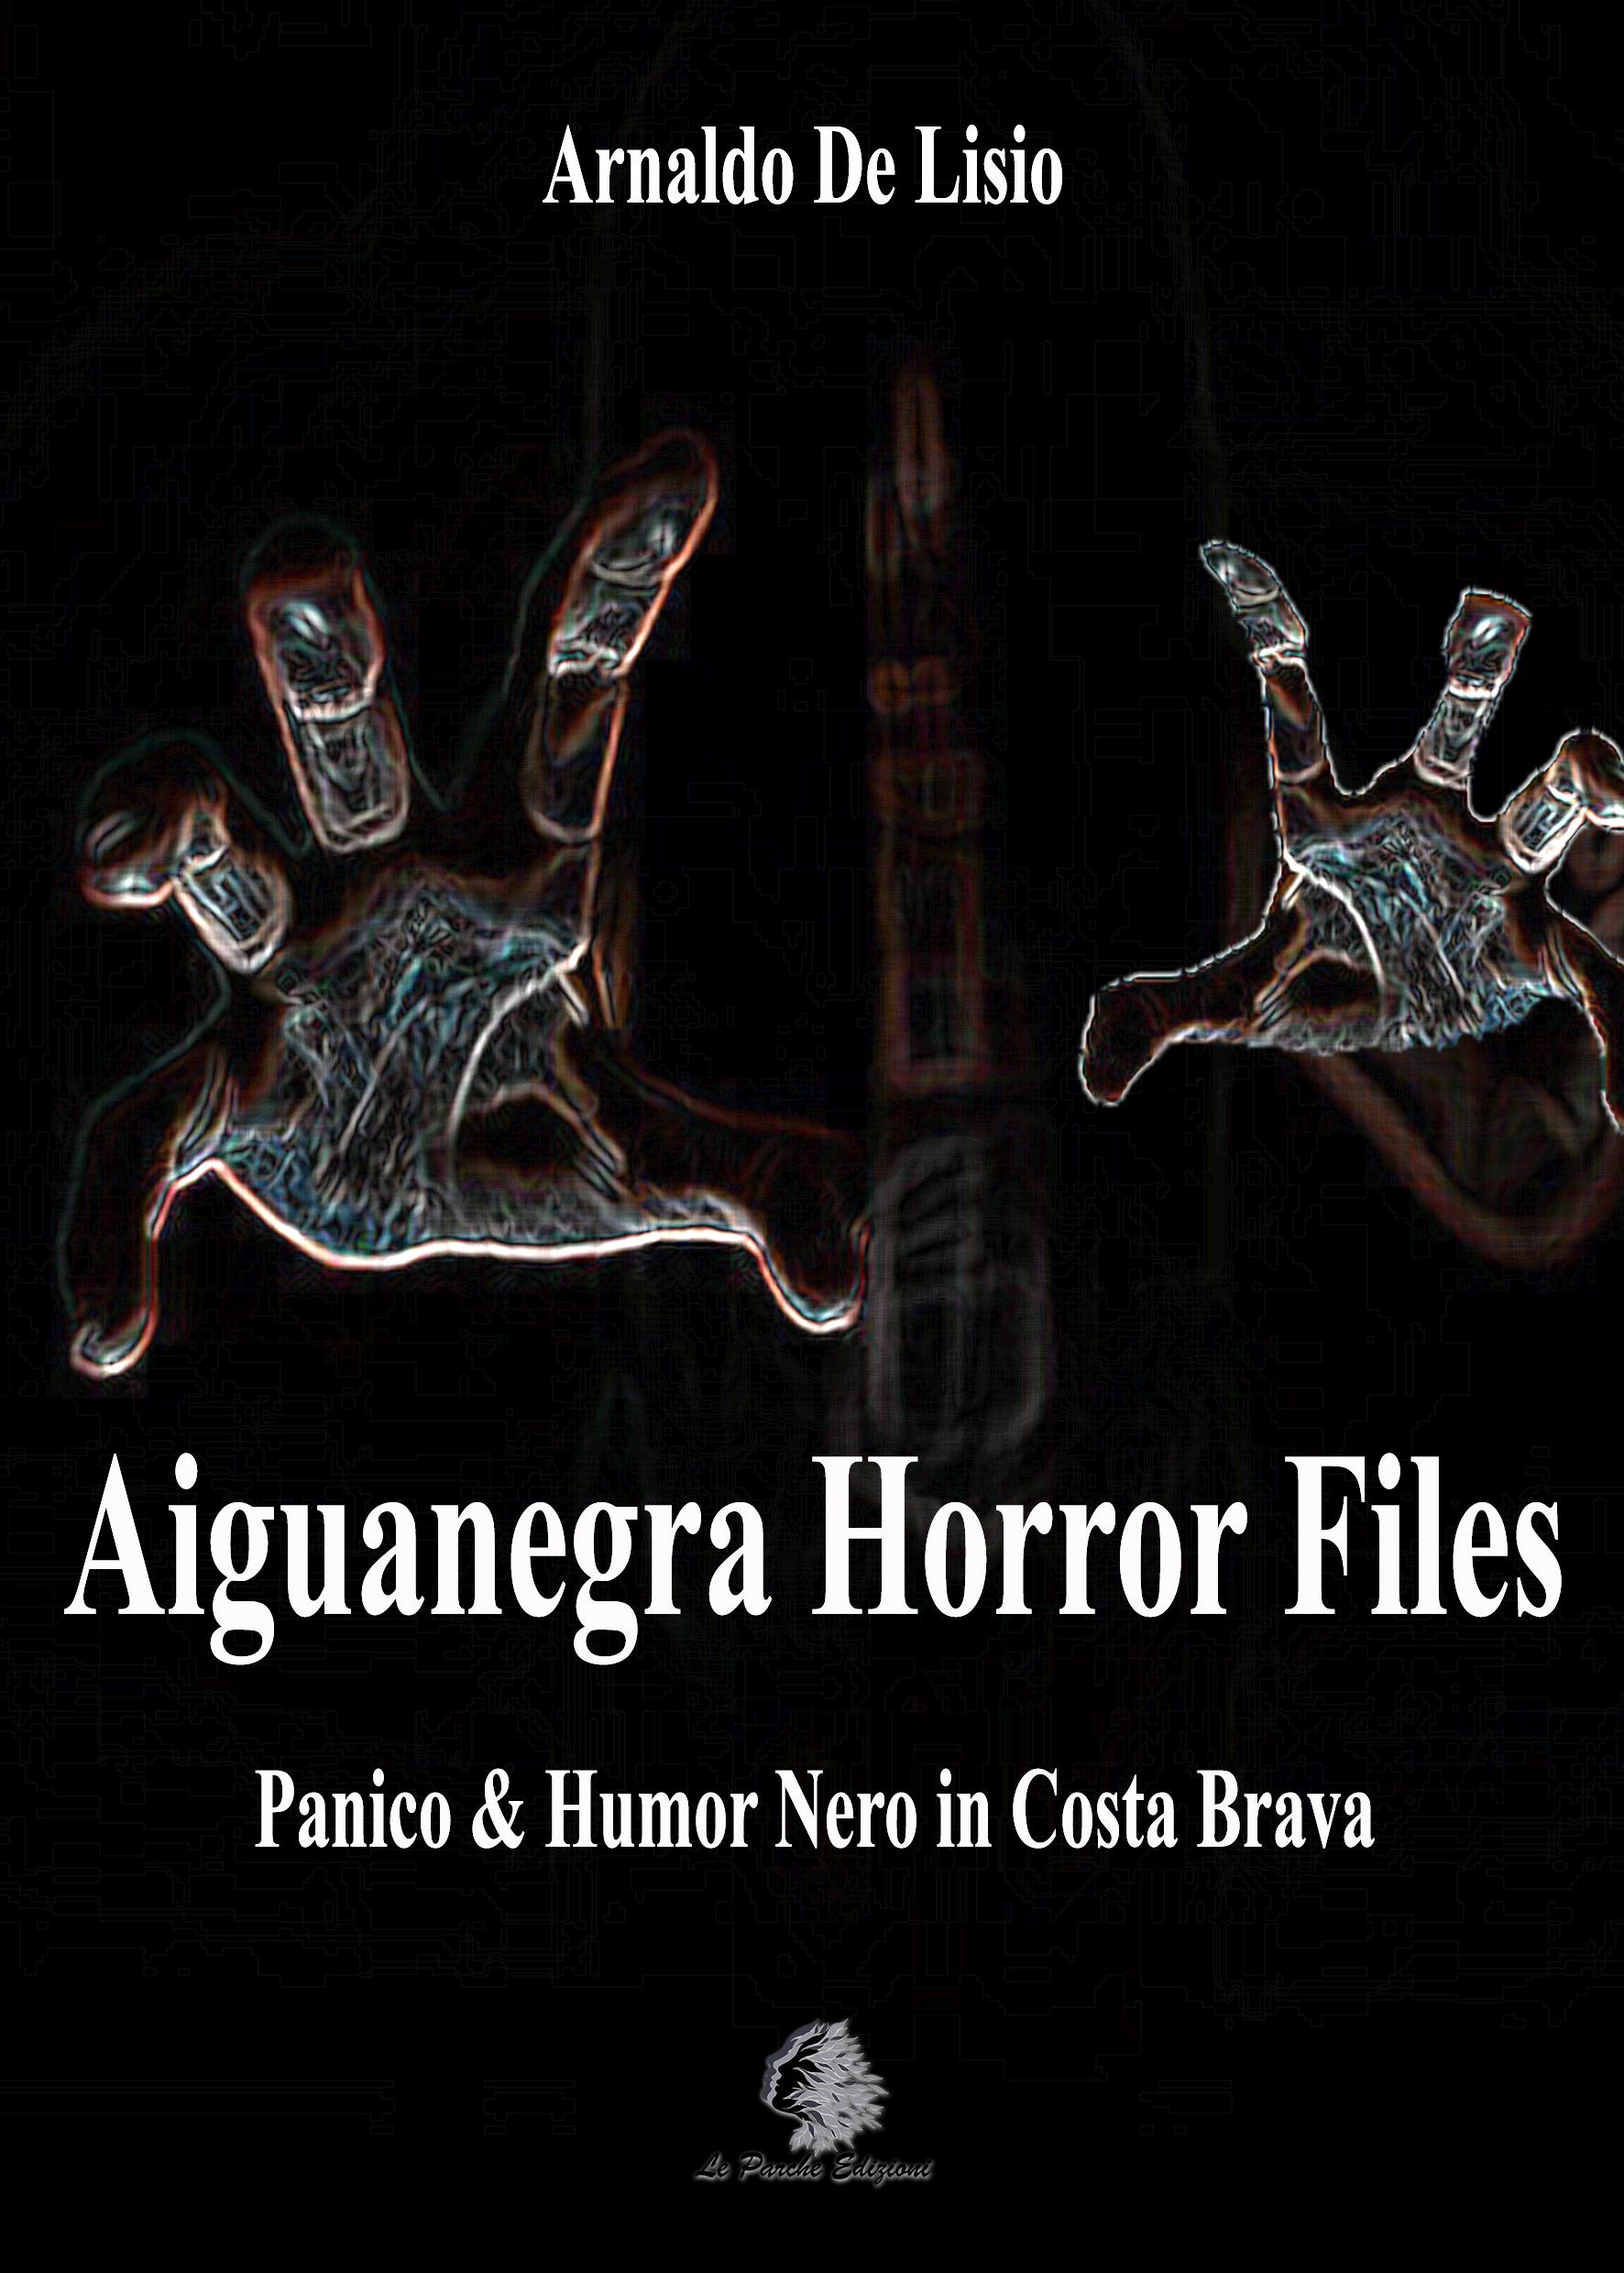 "Aiguanegra Horror Files" di Arnaldo De Lisio